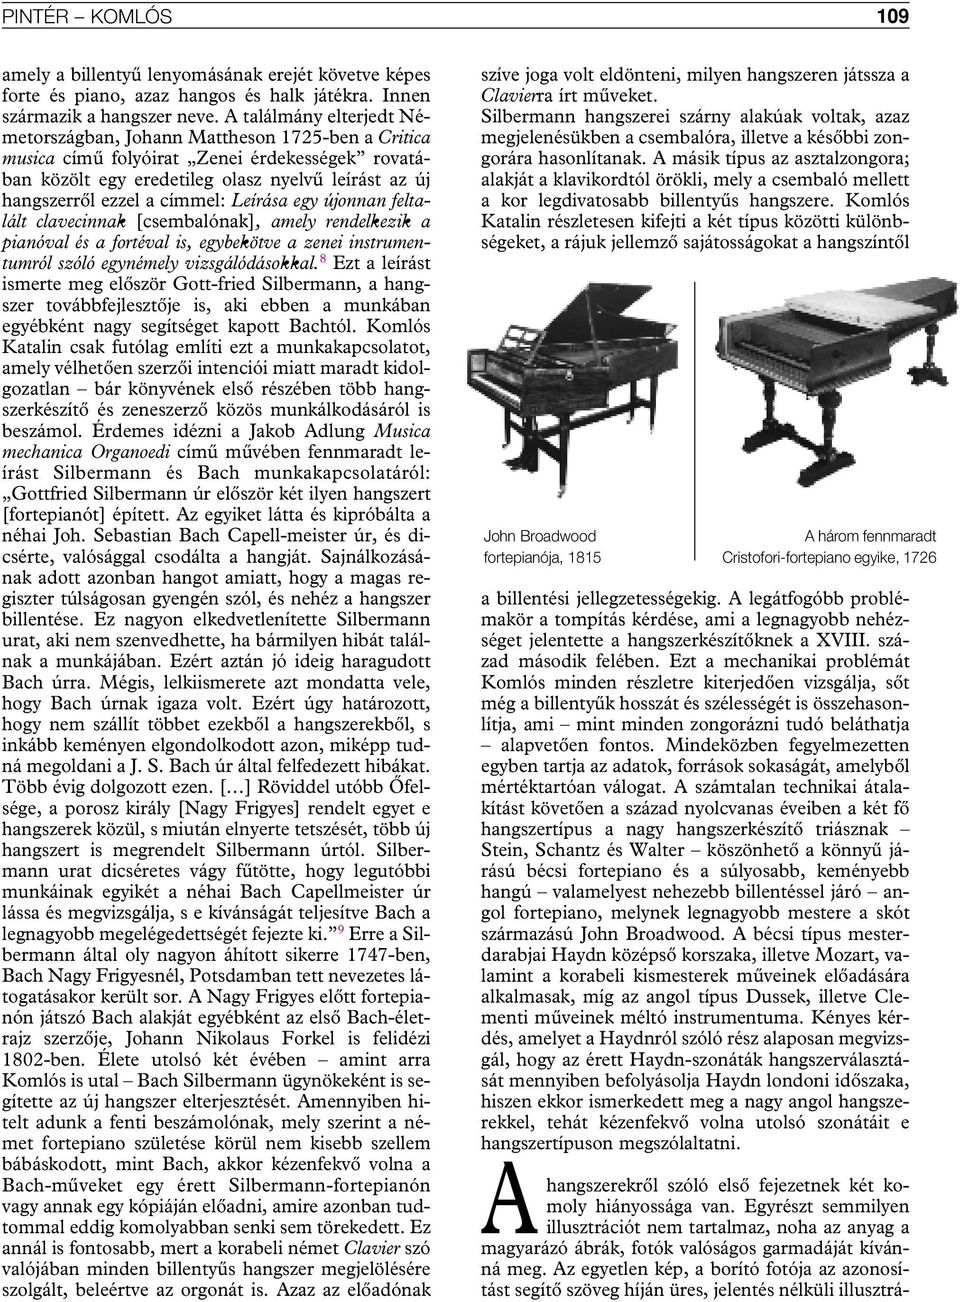 címmel: Leírása egy újonnan feltalált clavecinnak [csembalónak], amely rendelkezik a pianóval és a fortéval is, egybekötve a zenei instrumentumról szóló egynémely vizsgálódásokkal.